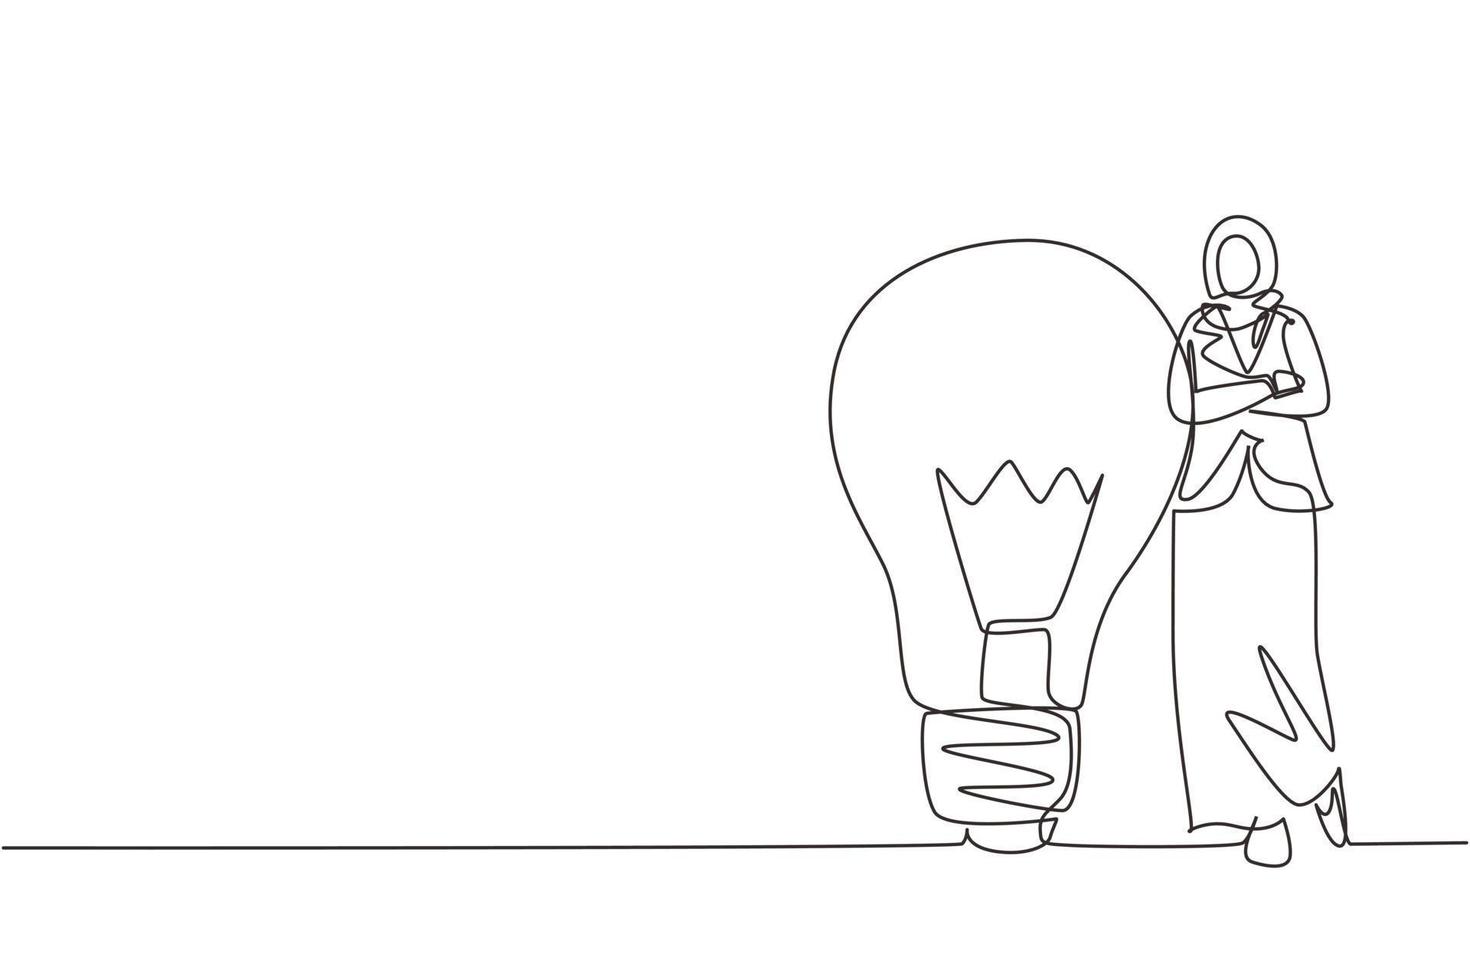 einzelne linie, die eine arabische geschäftsfrau zeichnet, die sich auf eine riesige glühbirne stützt. Geschäftsleute haben Ideen, sich an das Lampensymbol zu lehnen, ist eine gute Idee. ununterbrochene Linie zeichnen grafische Vektorillustration des Designs vektor